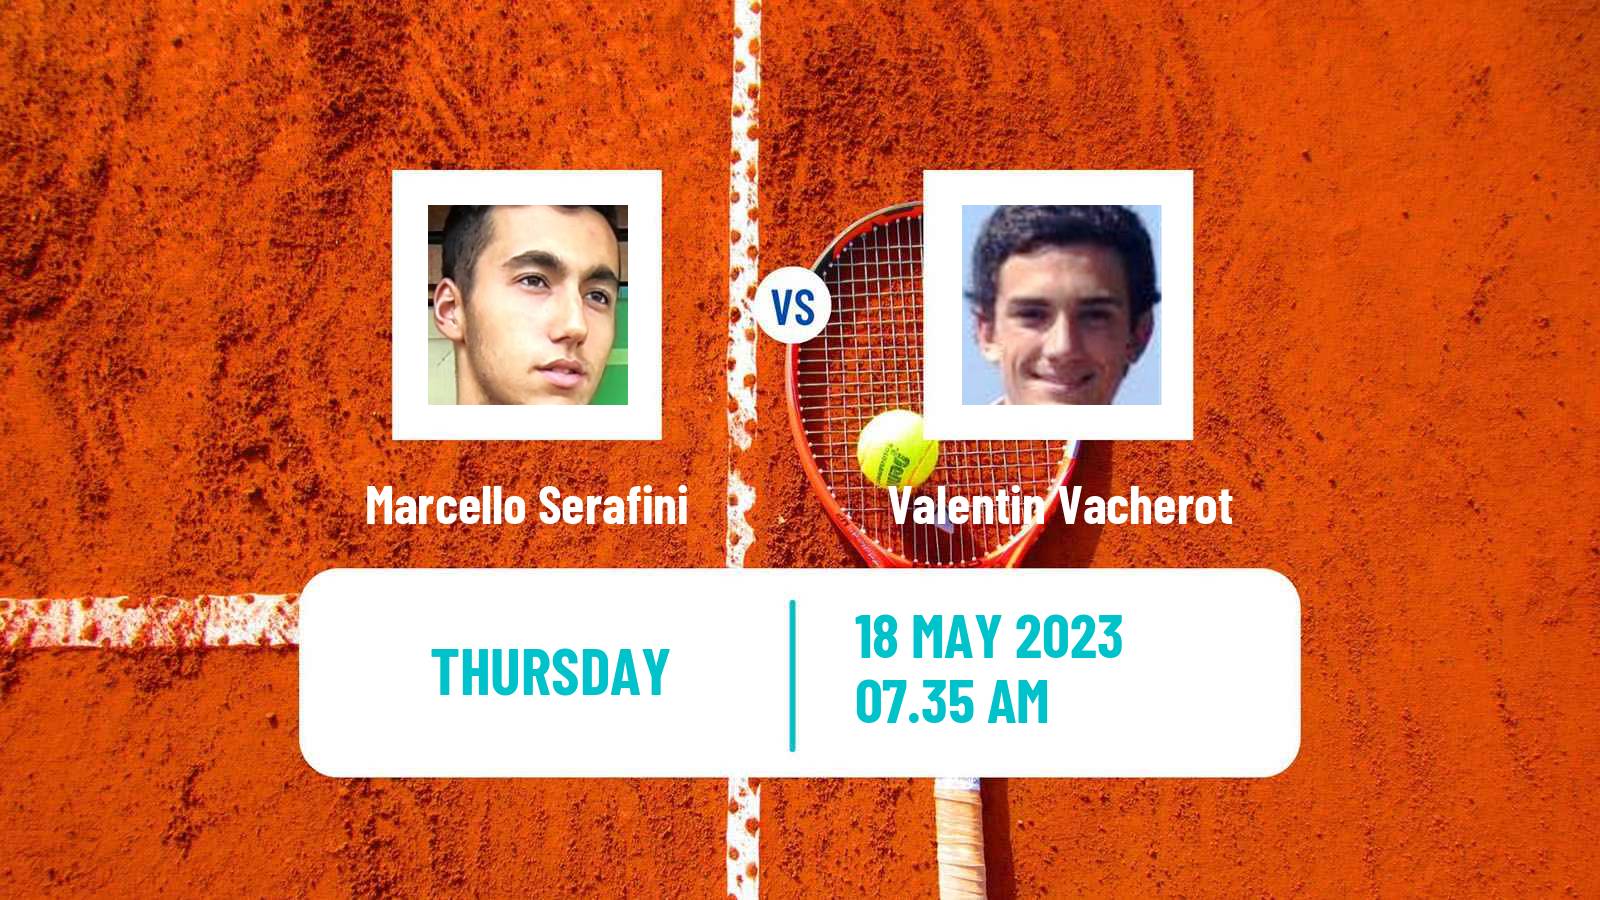 Tennis ITF M25 Reggio Emilia Men Marcello Serafini - Valentin Vacherot